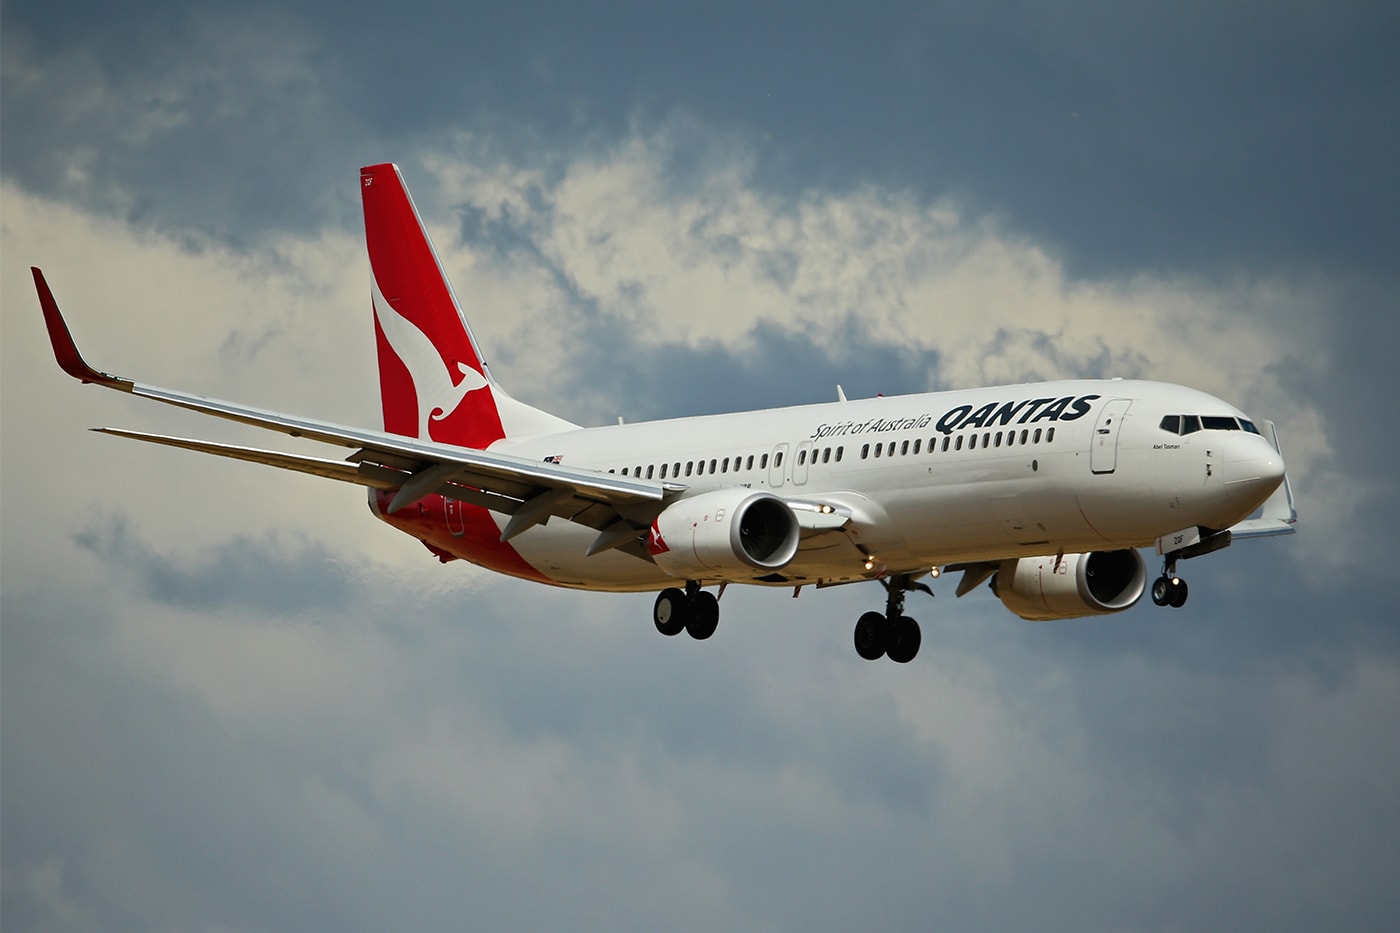 販売開始わずか10分で完売したというカンタス航空のチケットとは？ Qantas Flight To Nowhere 7 hour over Australia Sell Out 10 Minutes Info Coronavirus Travel